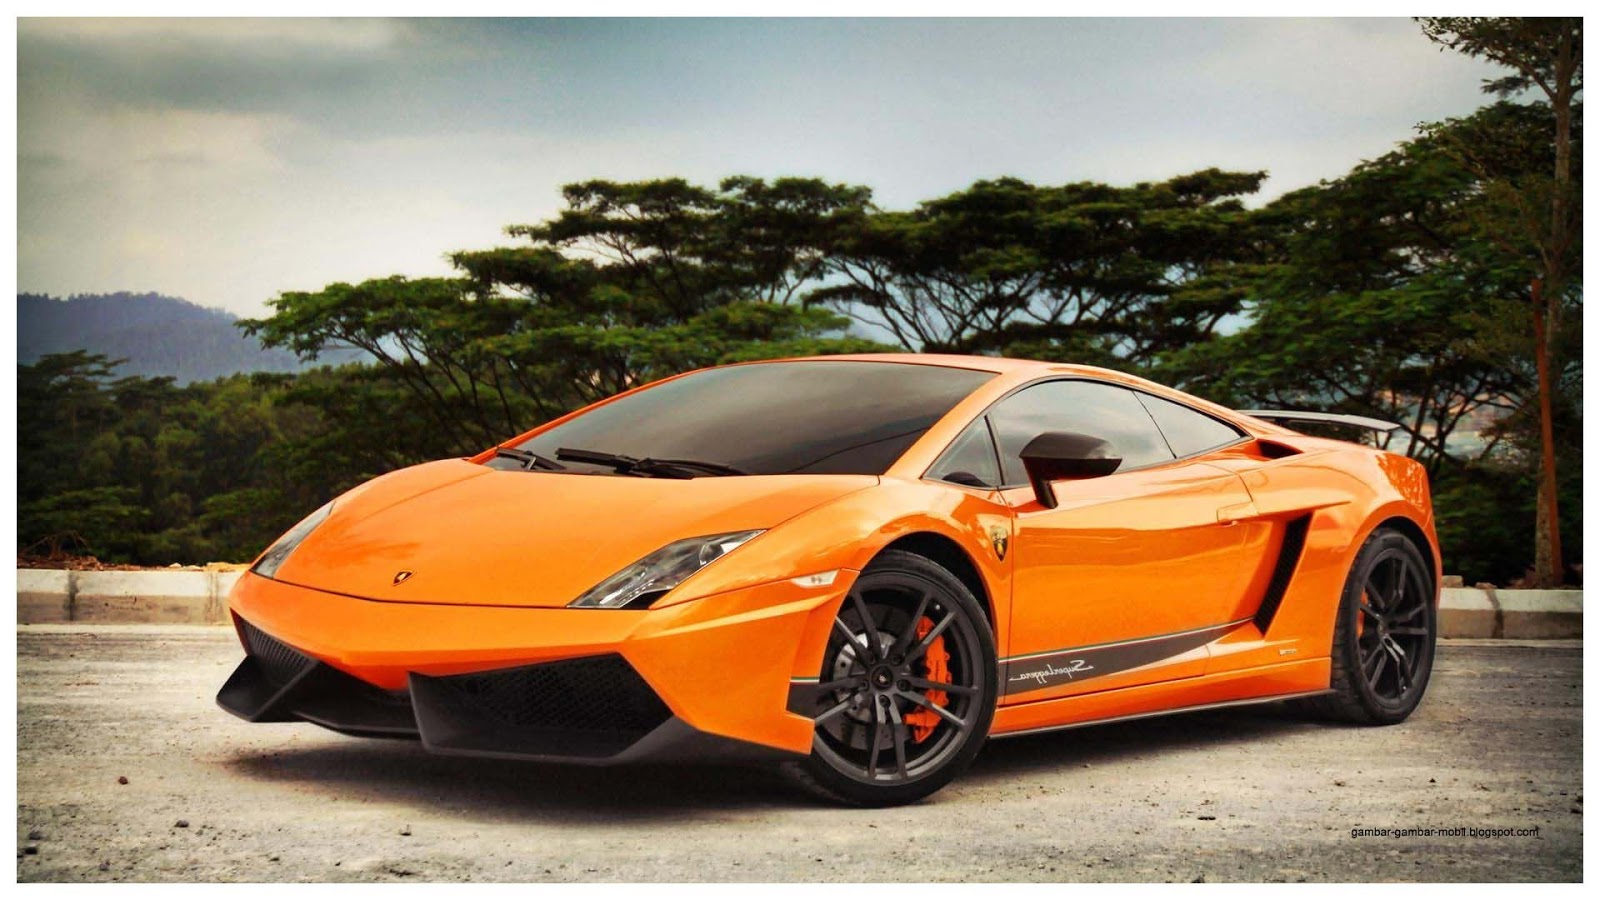 Foto Modifikasi Mobil Sport Lamborghini Modifikasi Style